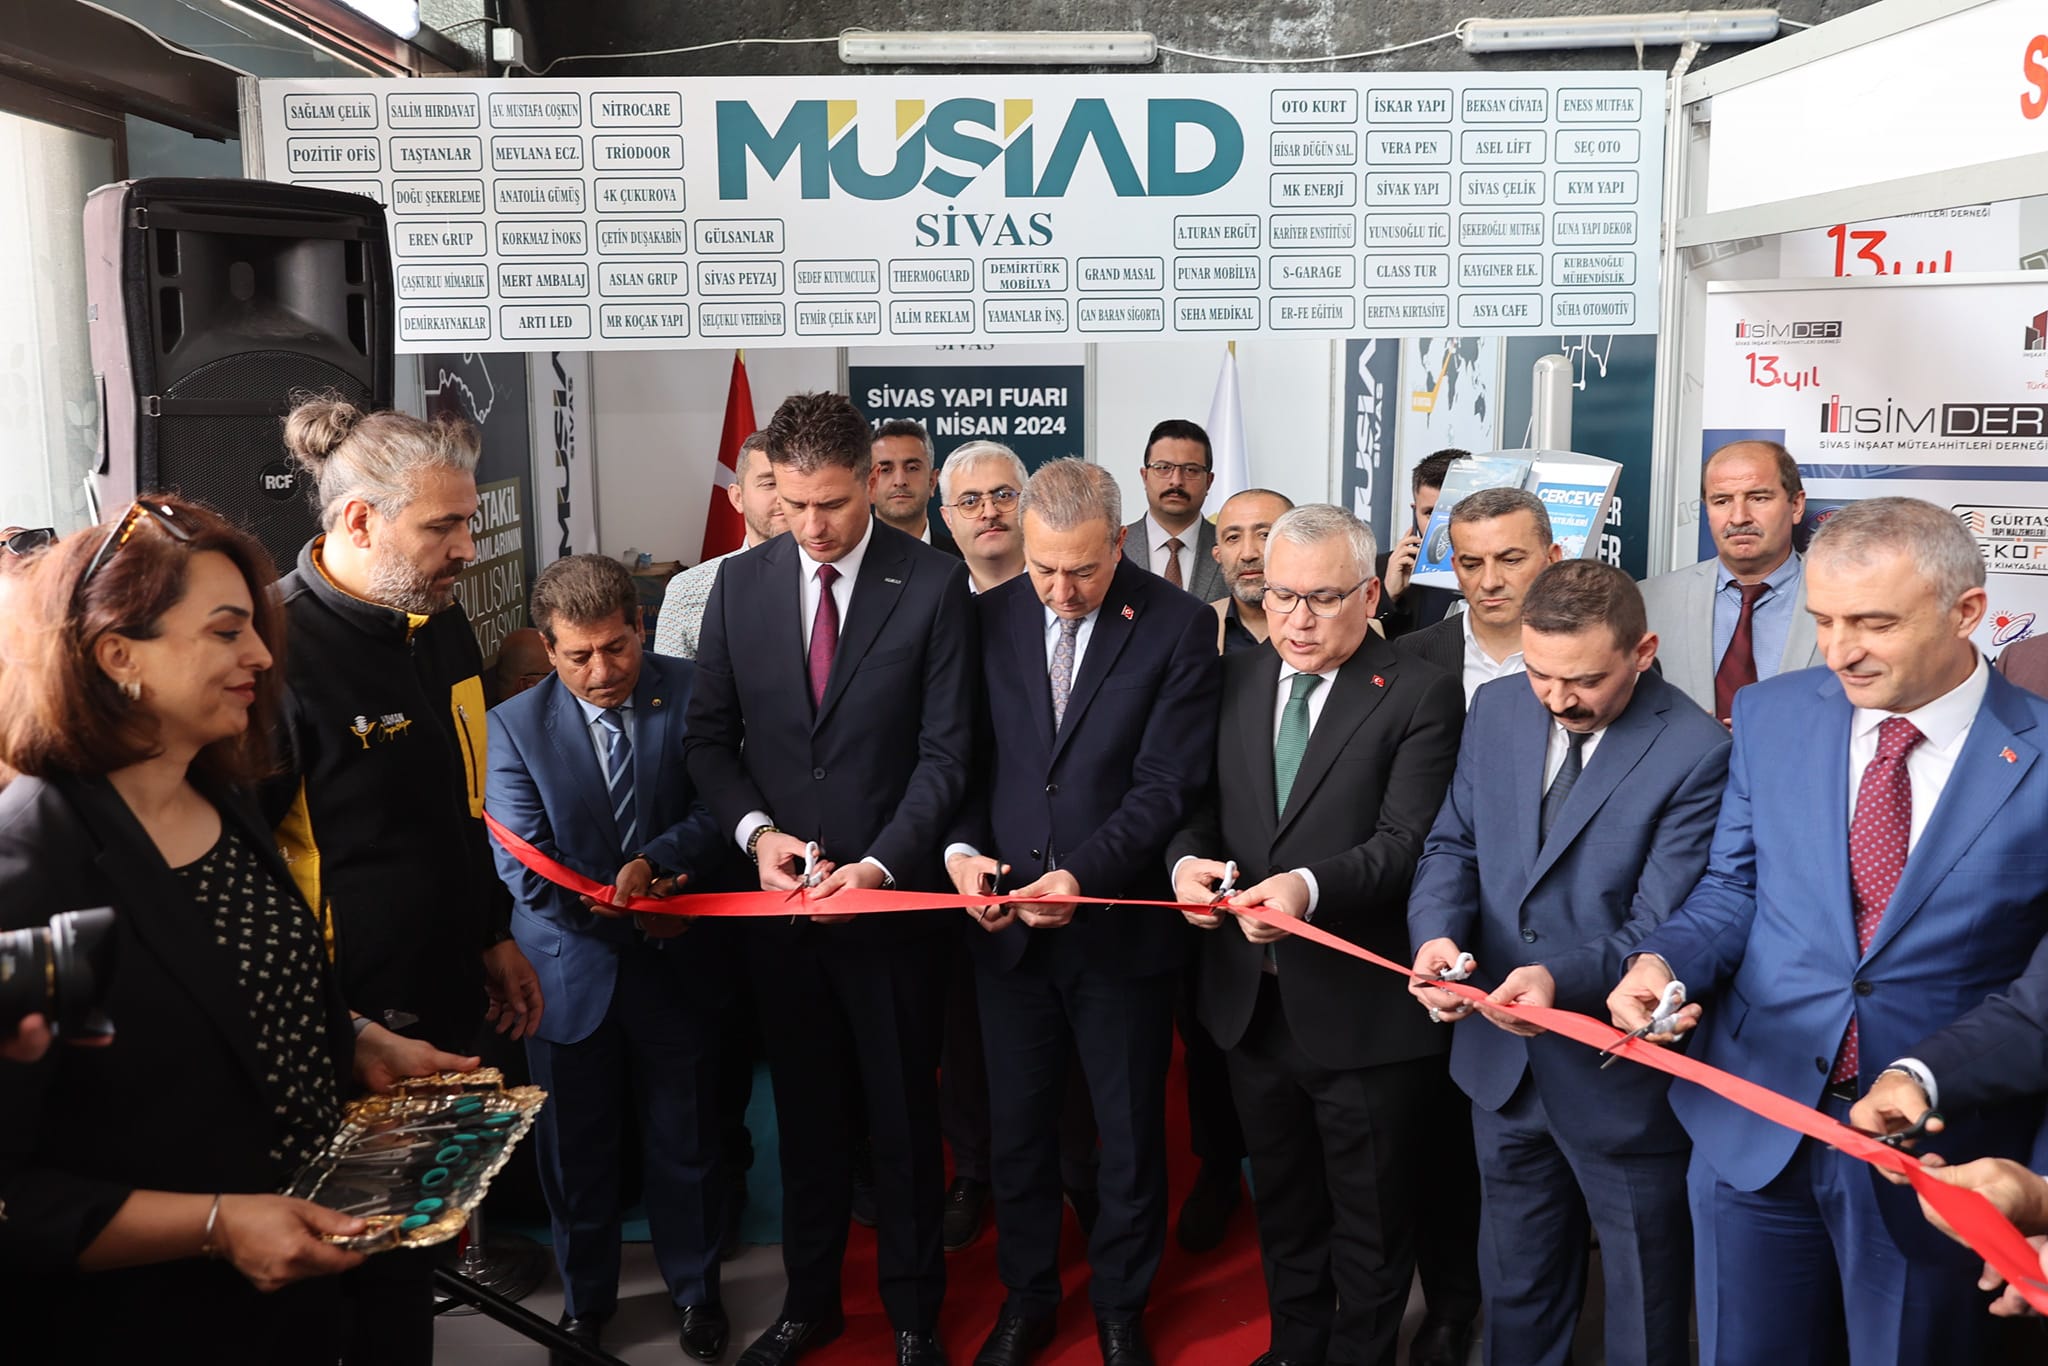 Sivas İnşaat Müteahhitleri Derneği (SİMDER) ve Show Expo katkılarıyla organize edilen Sivas Yapı Fuarı’nın açılışı yapıldı